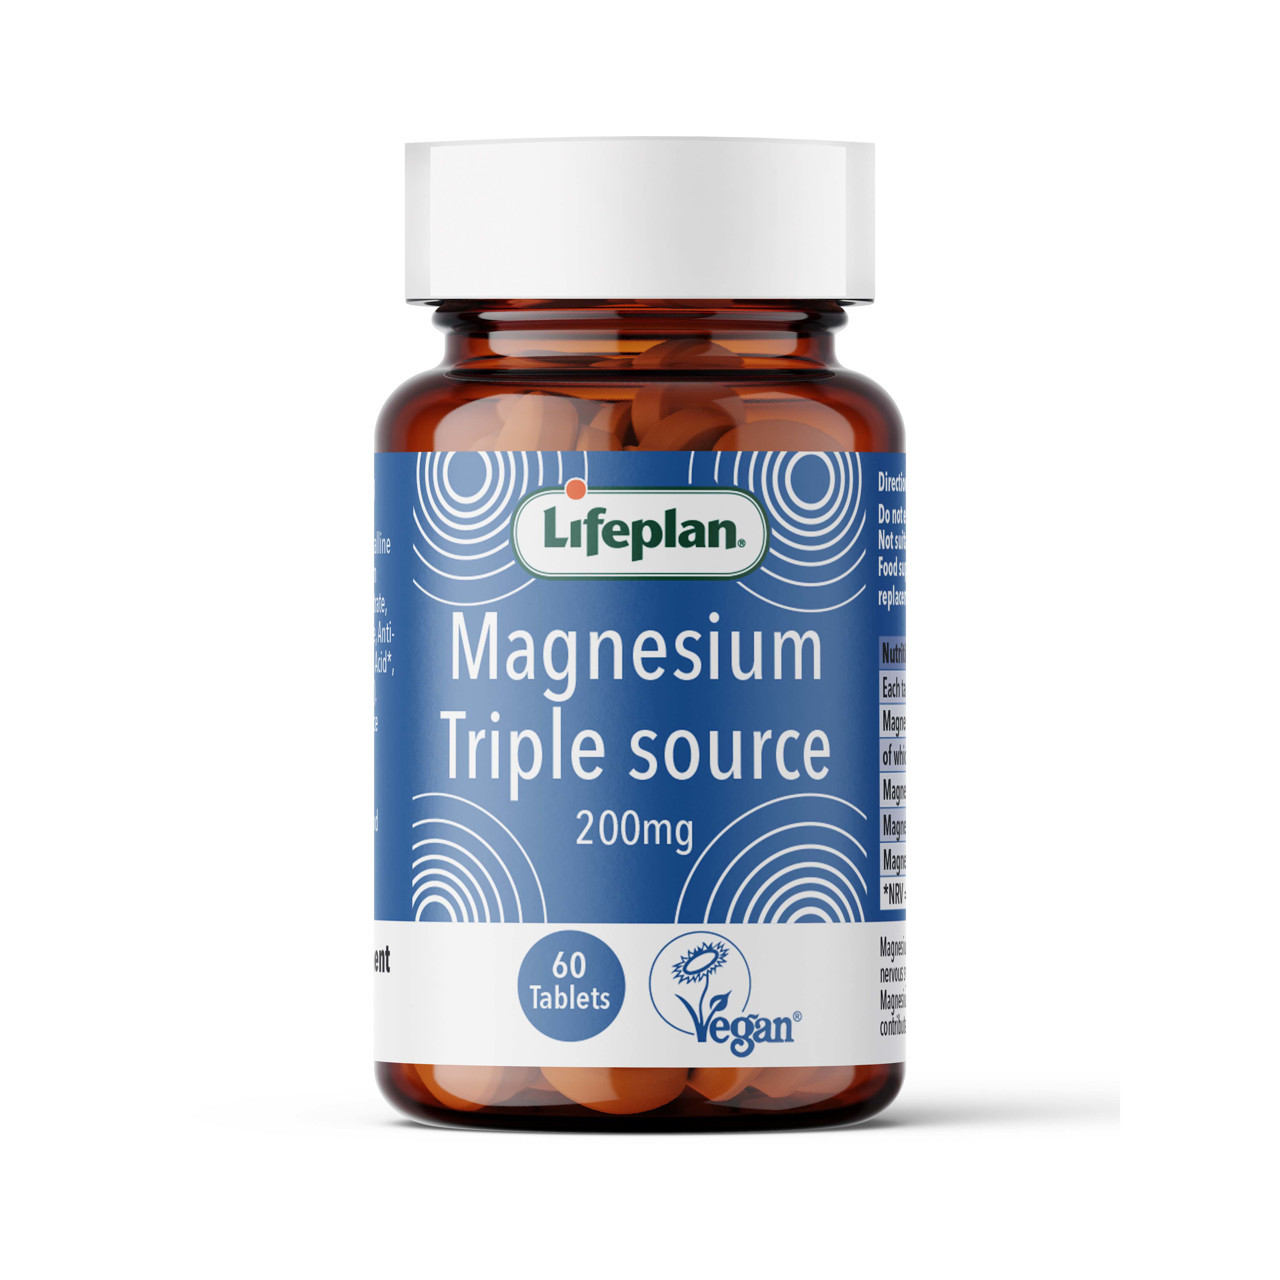 Magnesium Triple source 200 mg LIFEPLAN, magnis iš trijų šaltinių, 60 tablečių